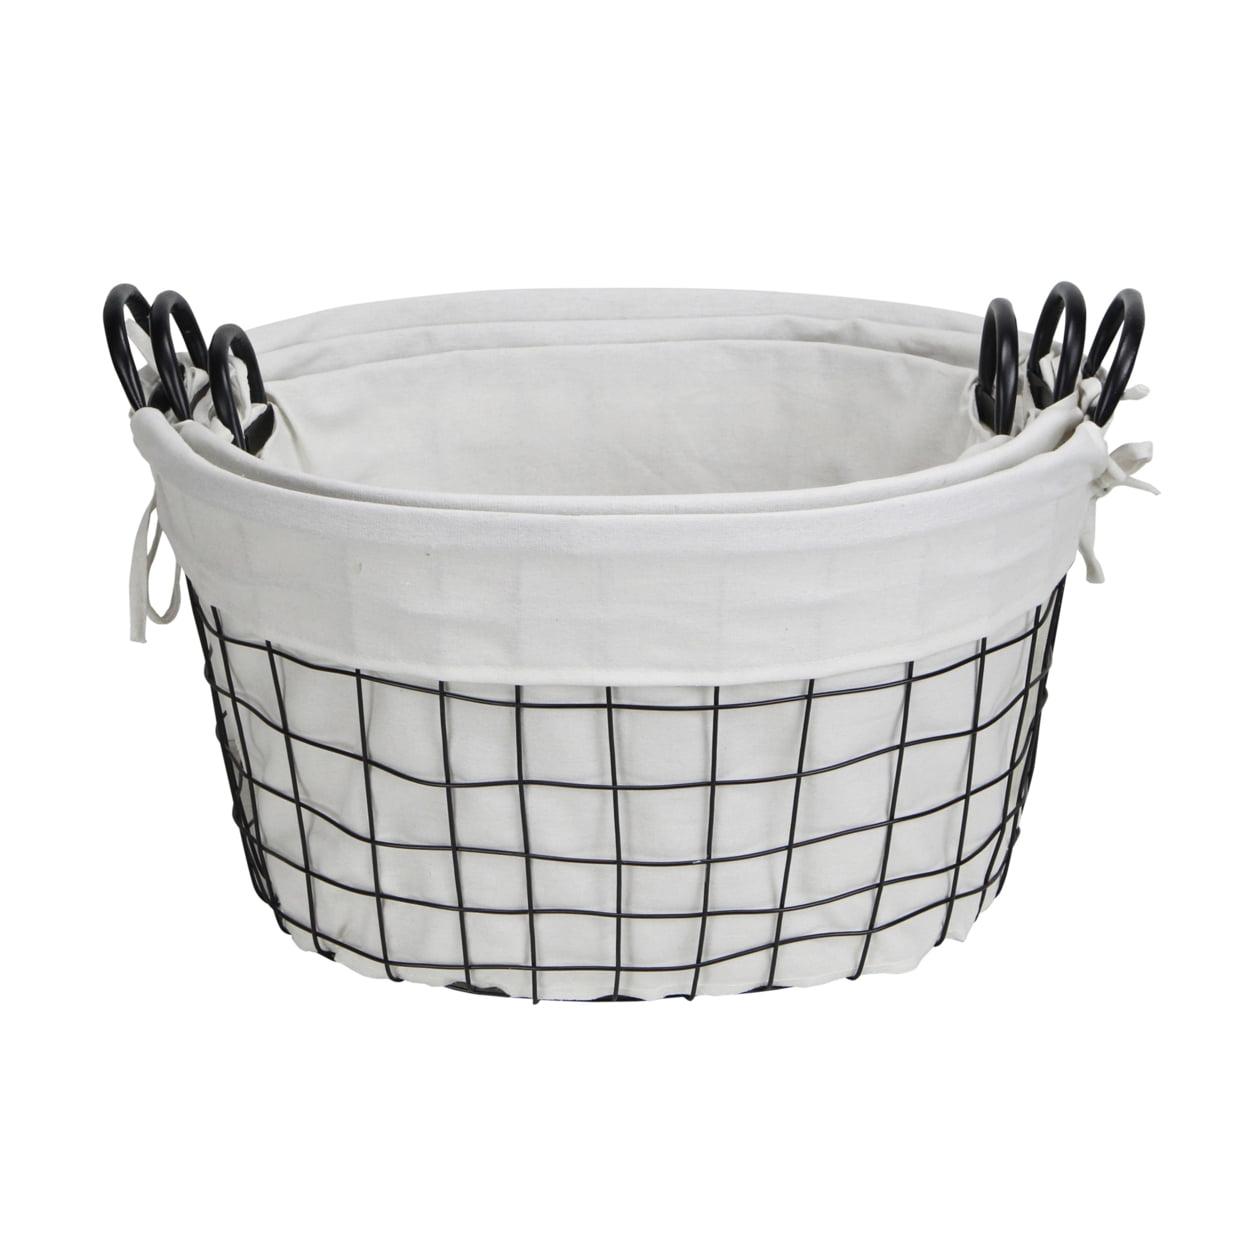 Elegant Black Metal & Linen Oval Storage Baskets - Set of 3